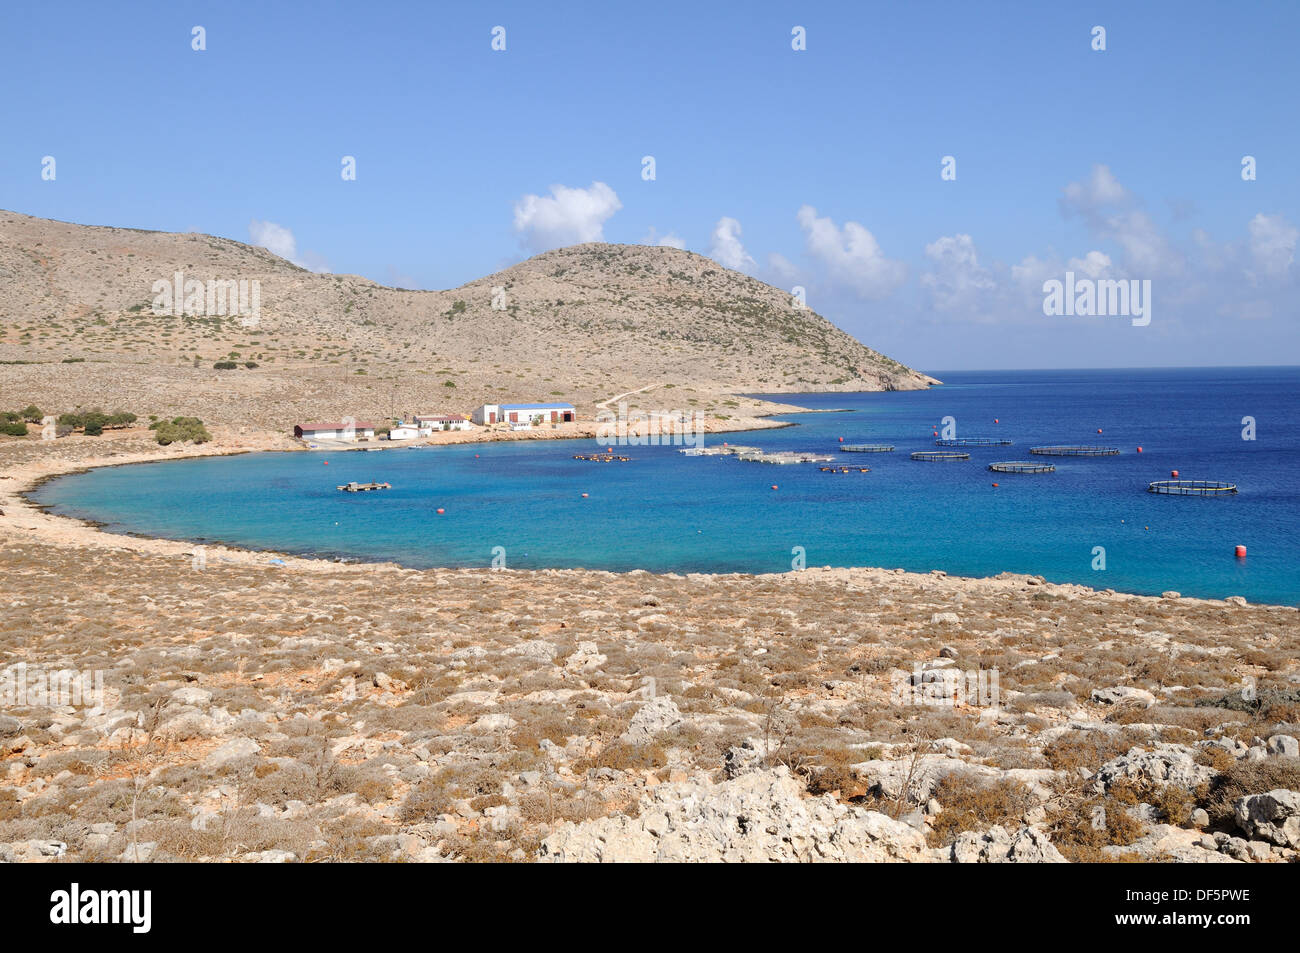 Eine Fischfarm in einer Bucht auf der griechischen Insel Chalki Chalki Ägäis die Dodekanes Griechenland Stockfoto